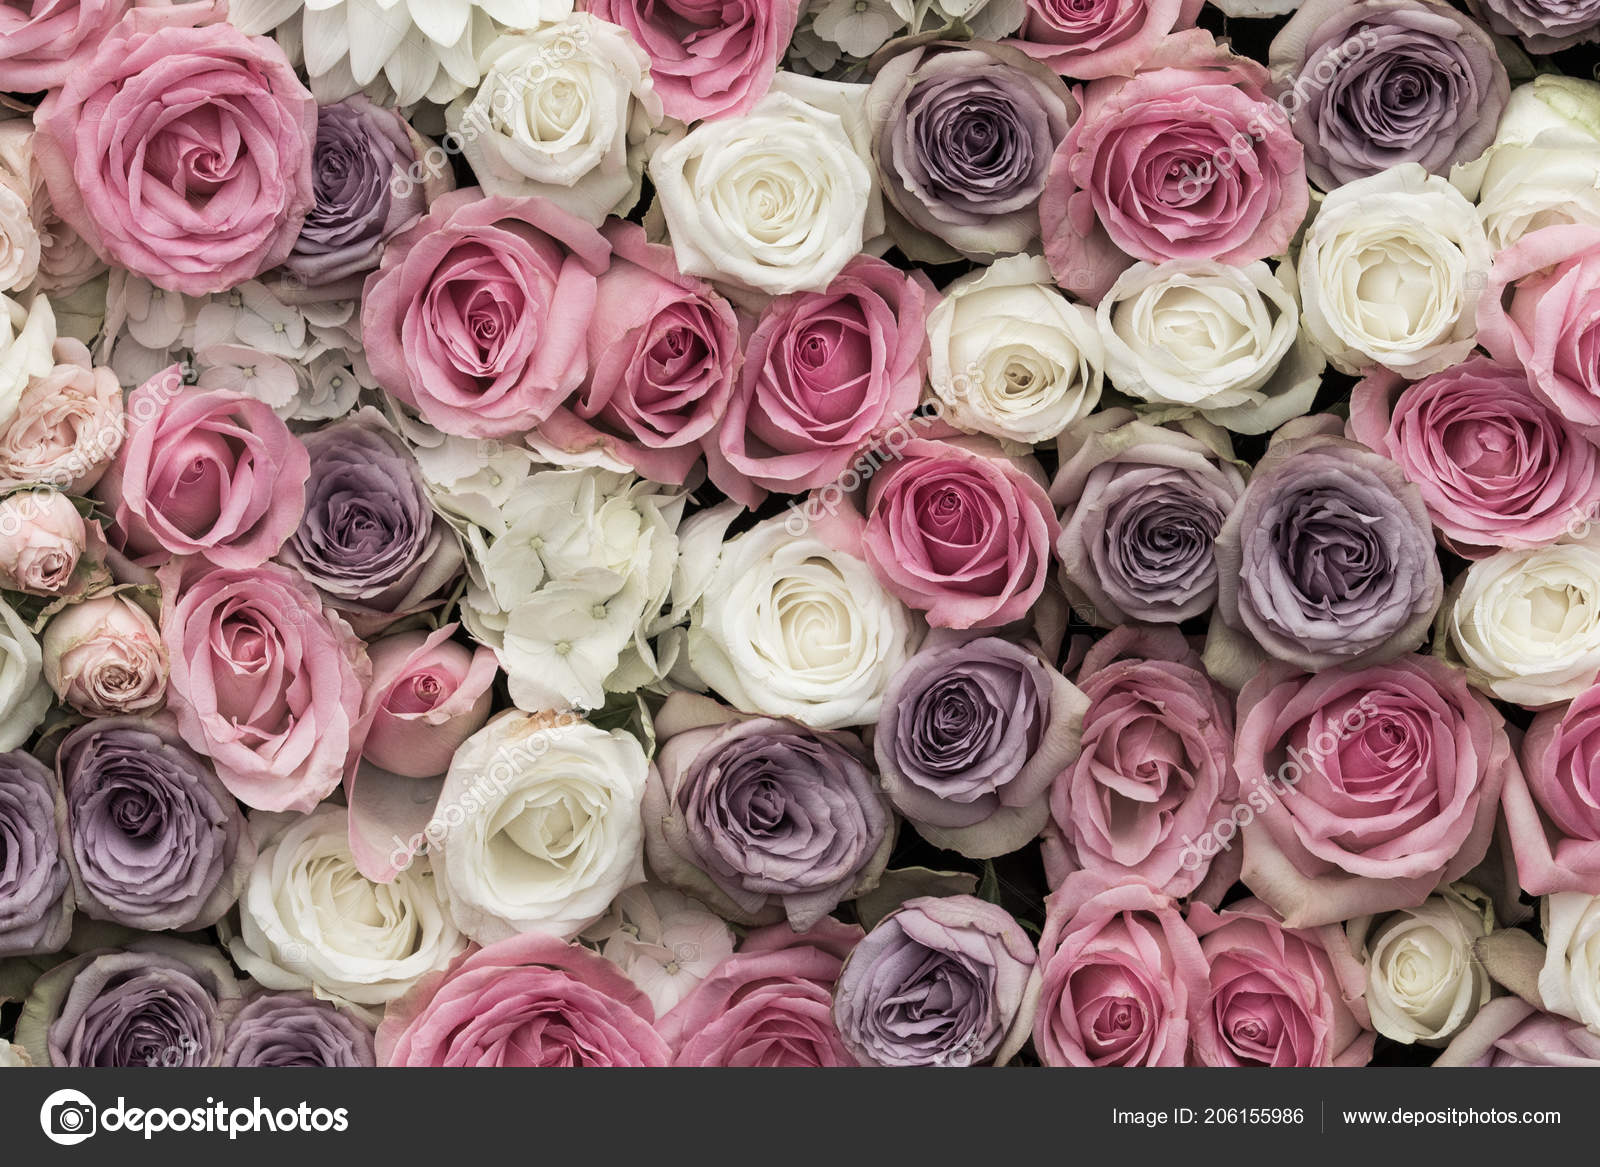 Những bông hoa hồng màu tím hồng tím trắng đang chờ bạn khám phá! Hãy xem hình nền đẹp này và tận hưởng vẻ đẹp của những bông hoa tuyệt đẹp này.